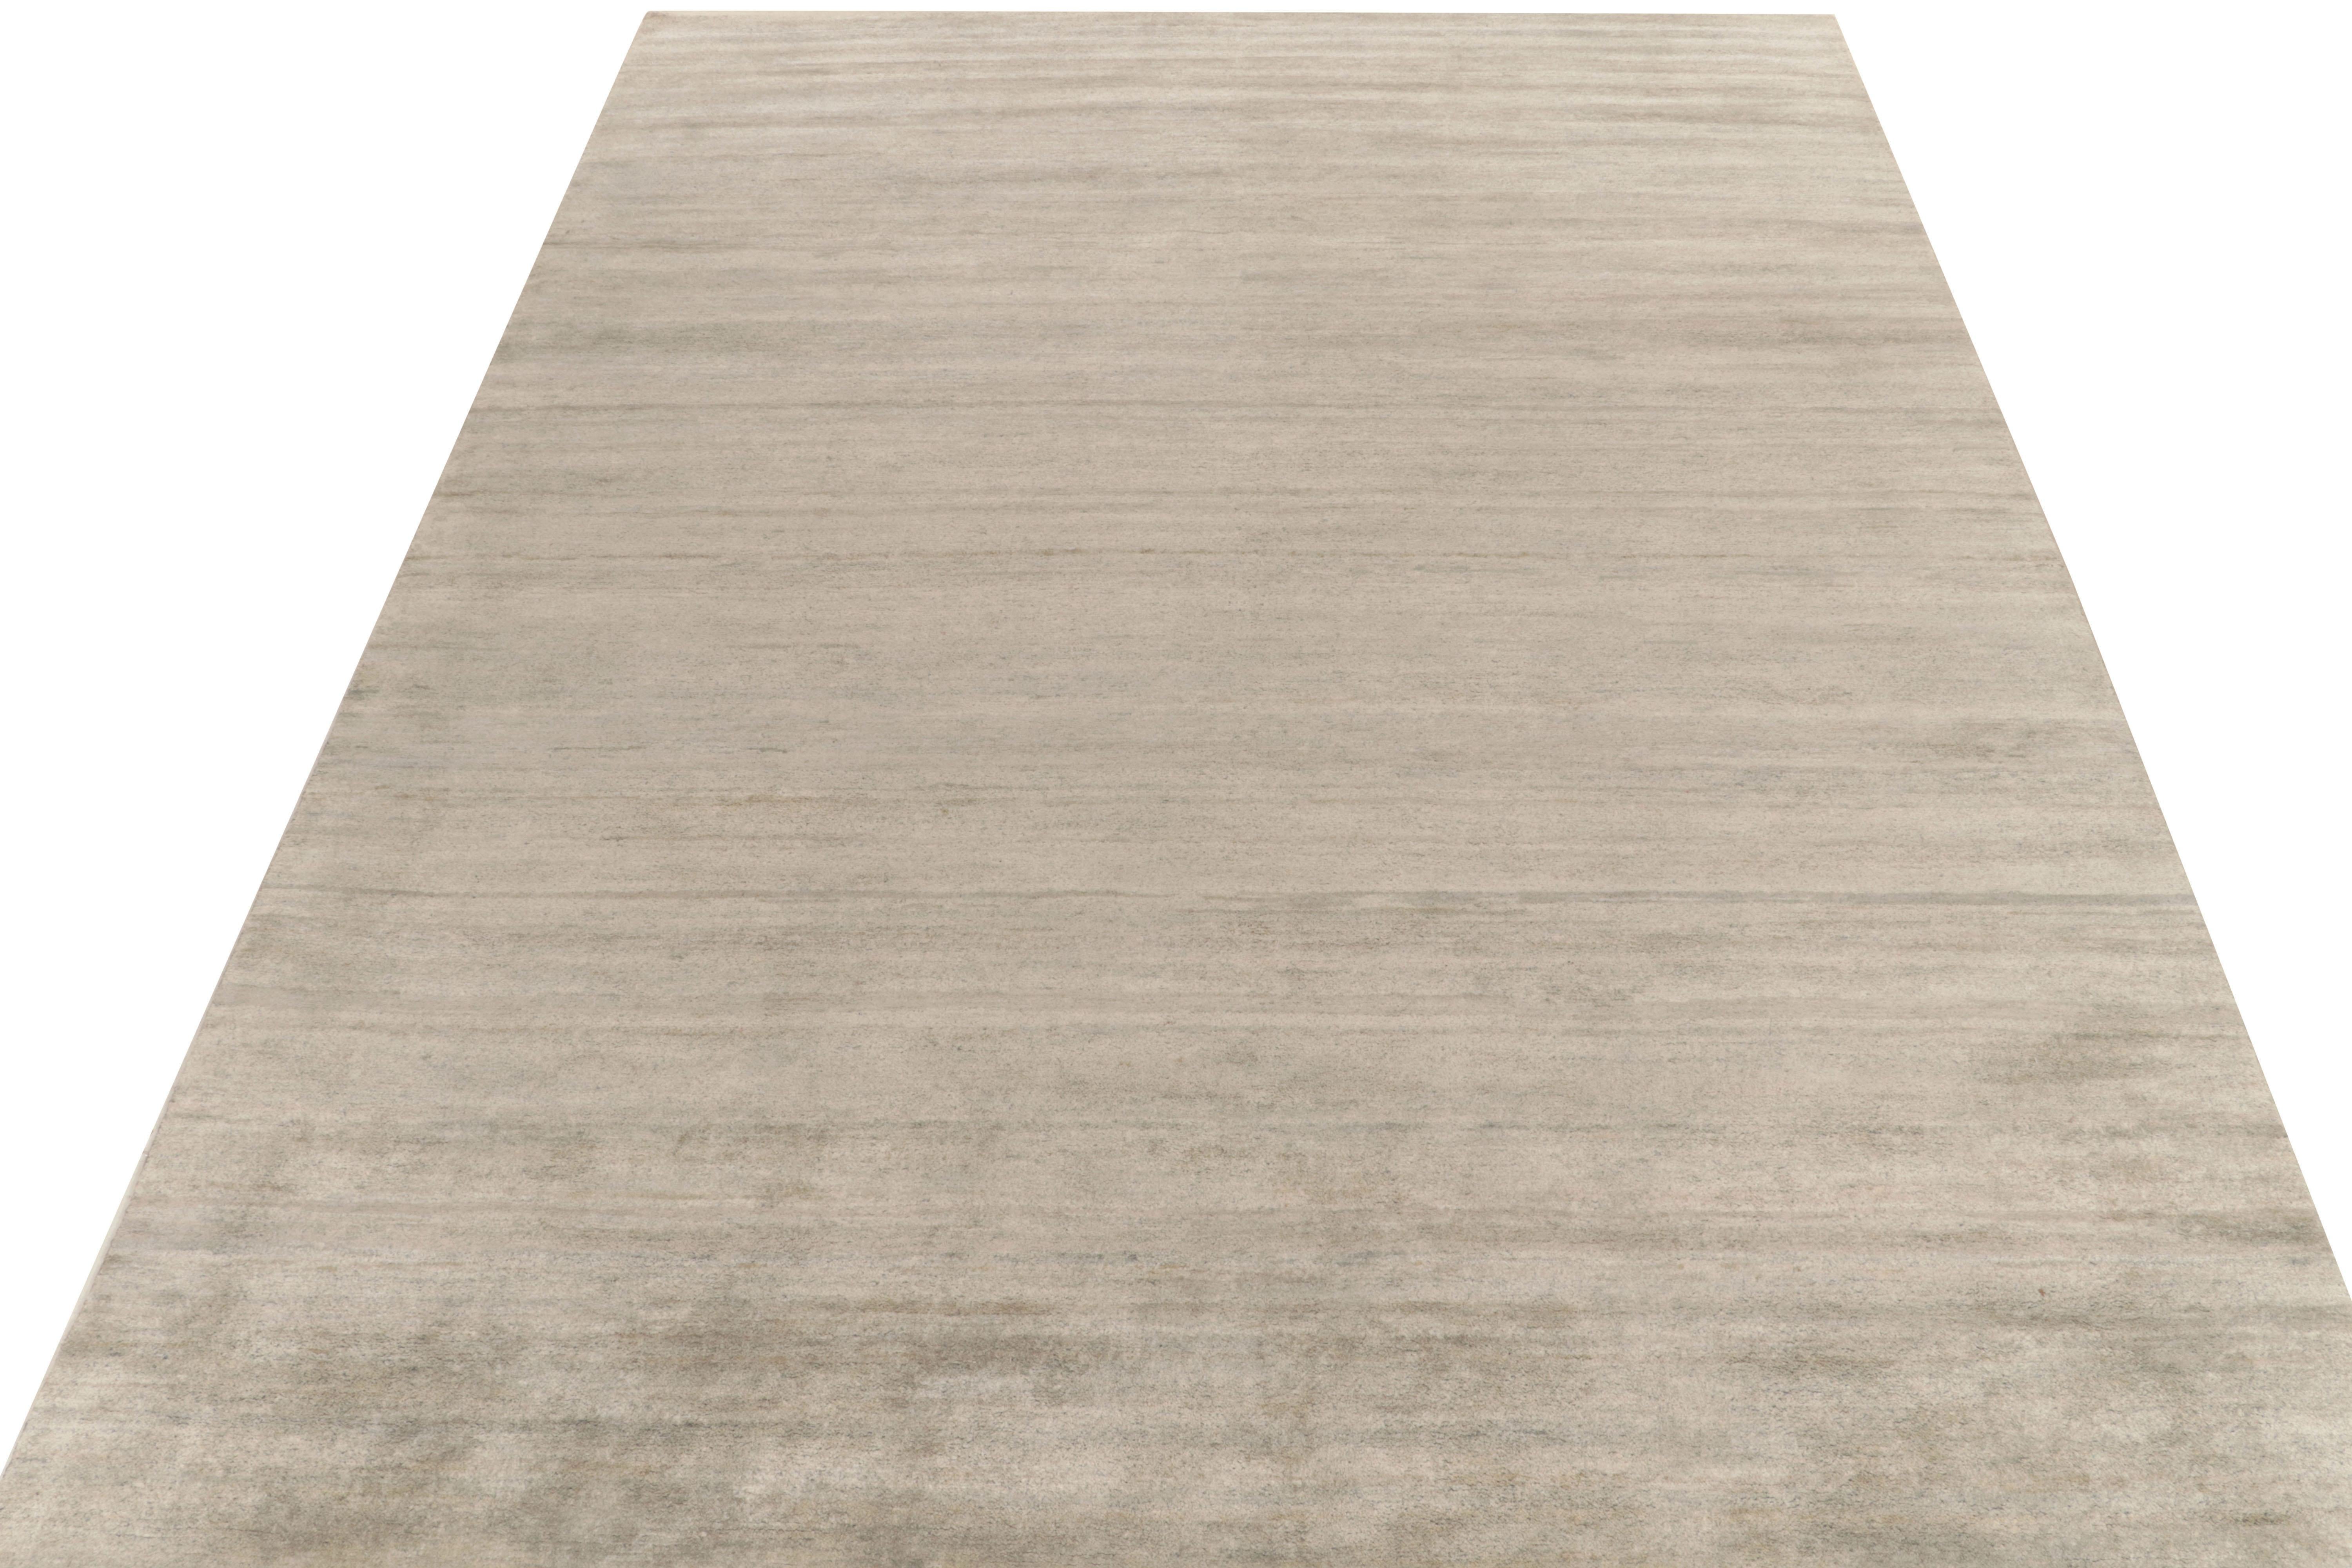 Rug & Kilim präsentiert seine raffinierte Interpretation moderner Ästhetik mit diesem eleganten, unifarbenen grauen Teppich in 10x14 aus unserer Texture of Color Kollektion. Das zeitgenössische Kleidungsstück besticht durch eine ausgereifte